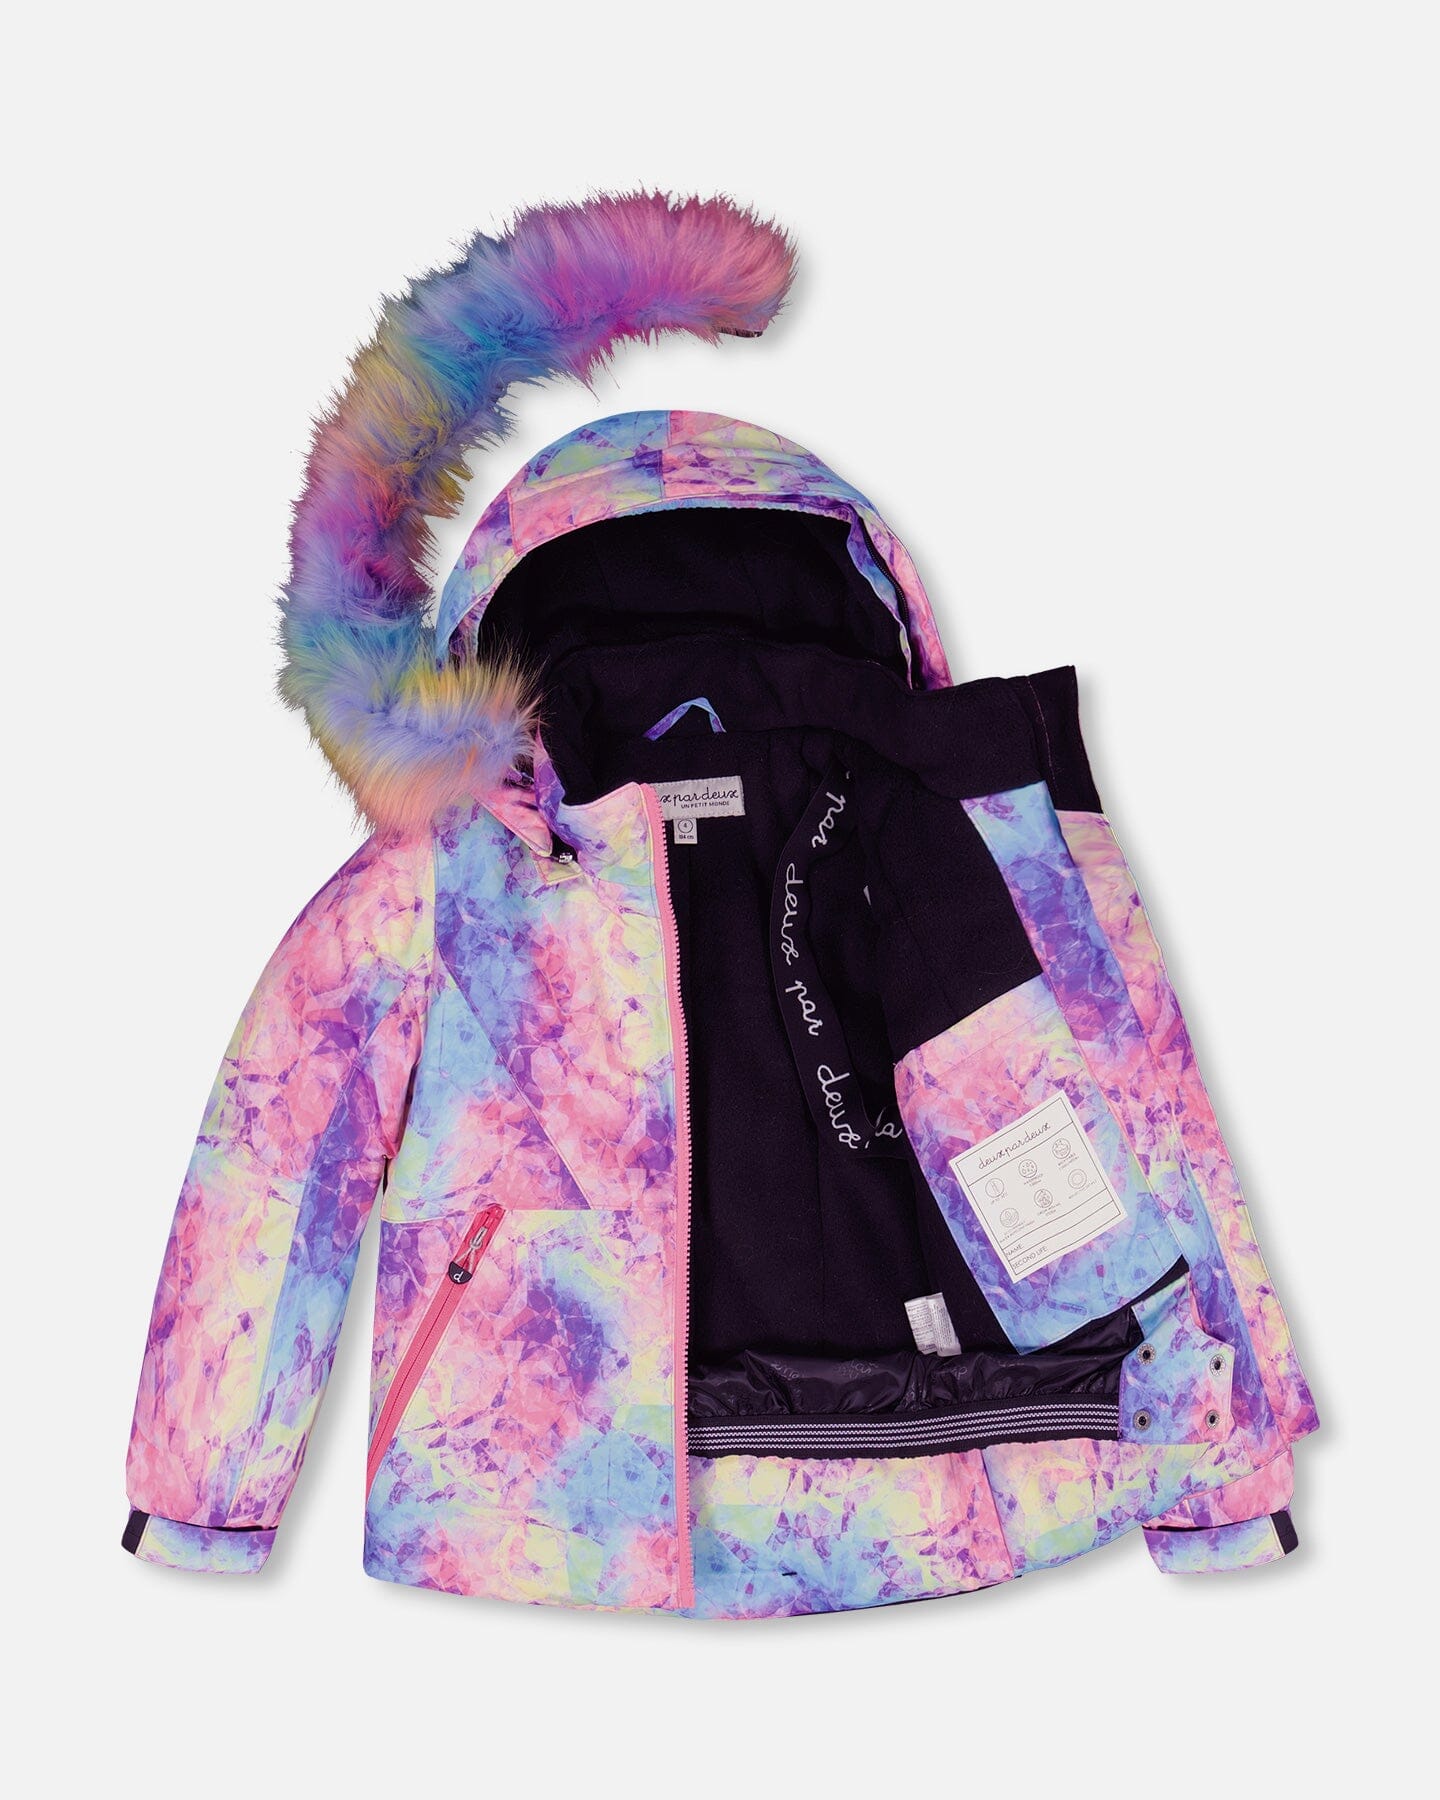 Two Piece Snowsuit Lavender With Frosted Rainbow Print Snowsuits Deux par Deux 